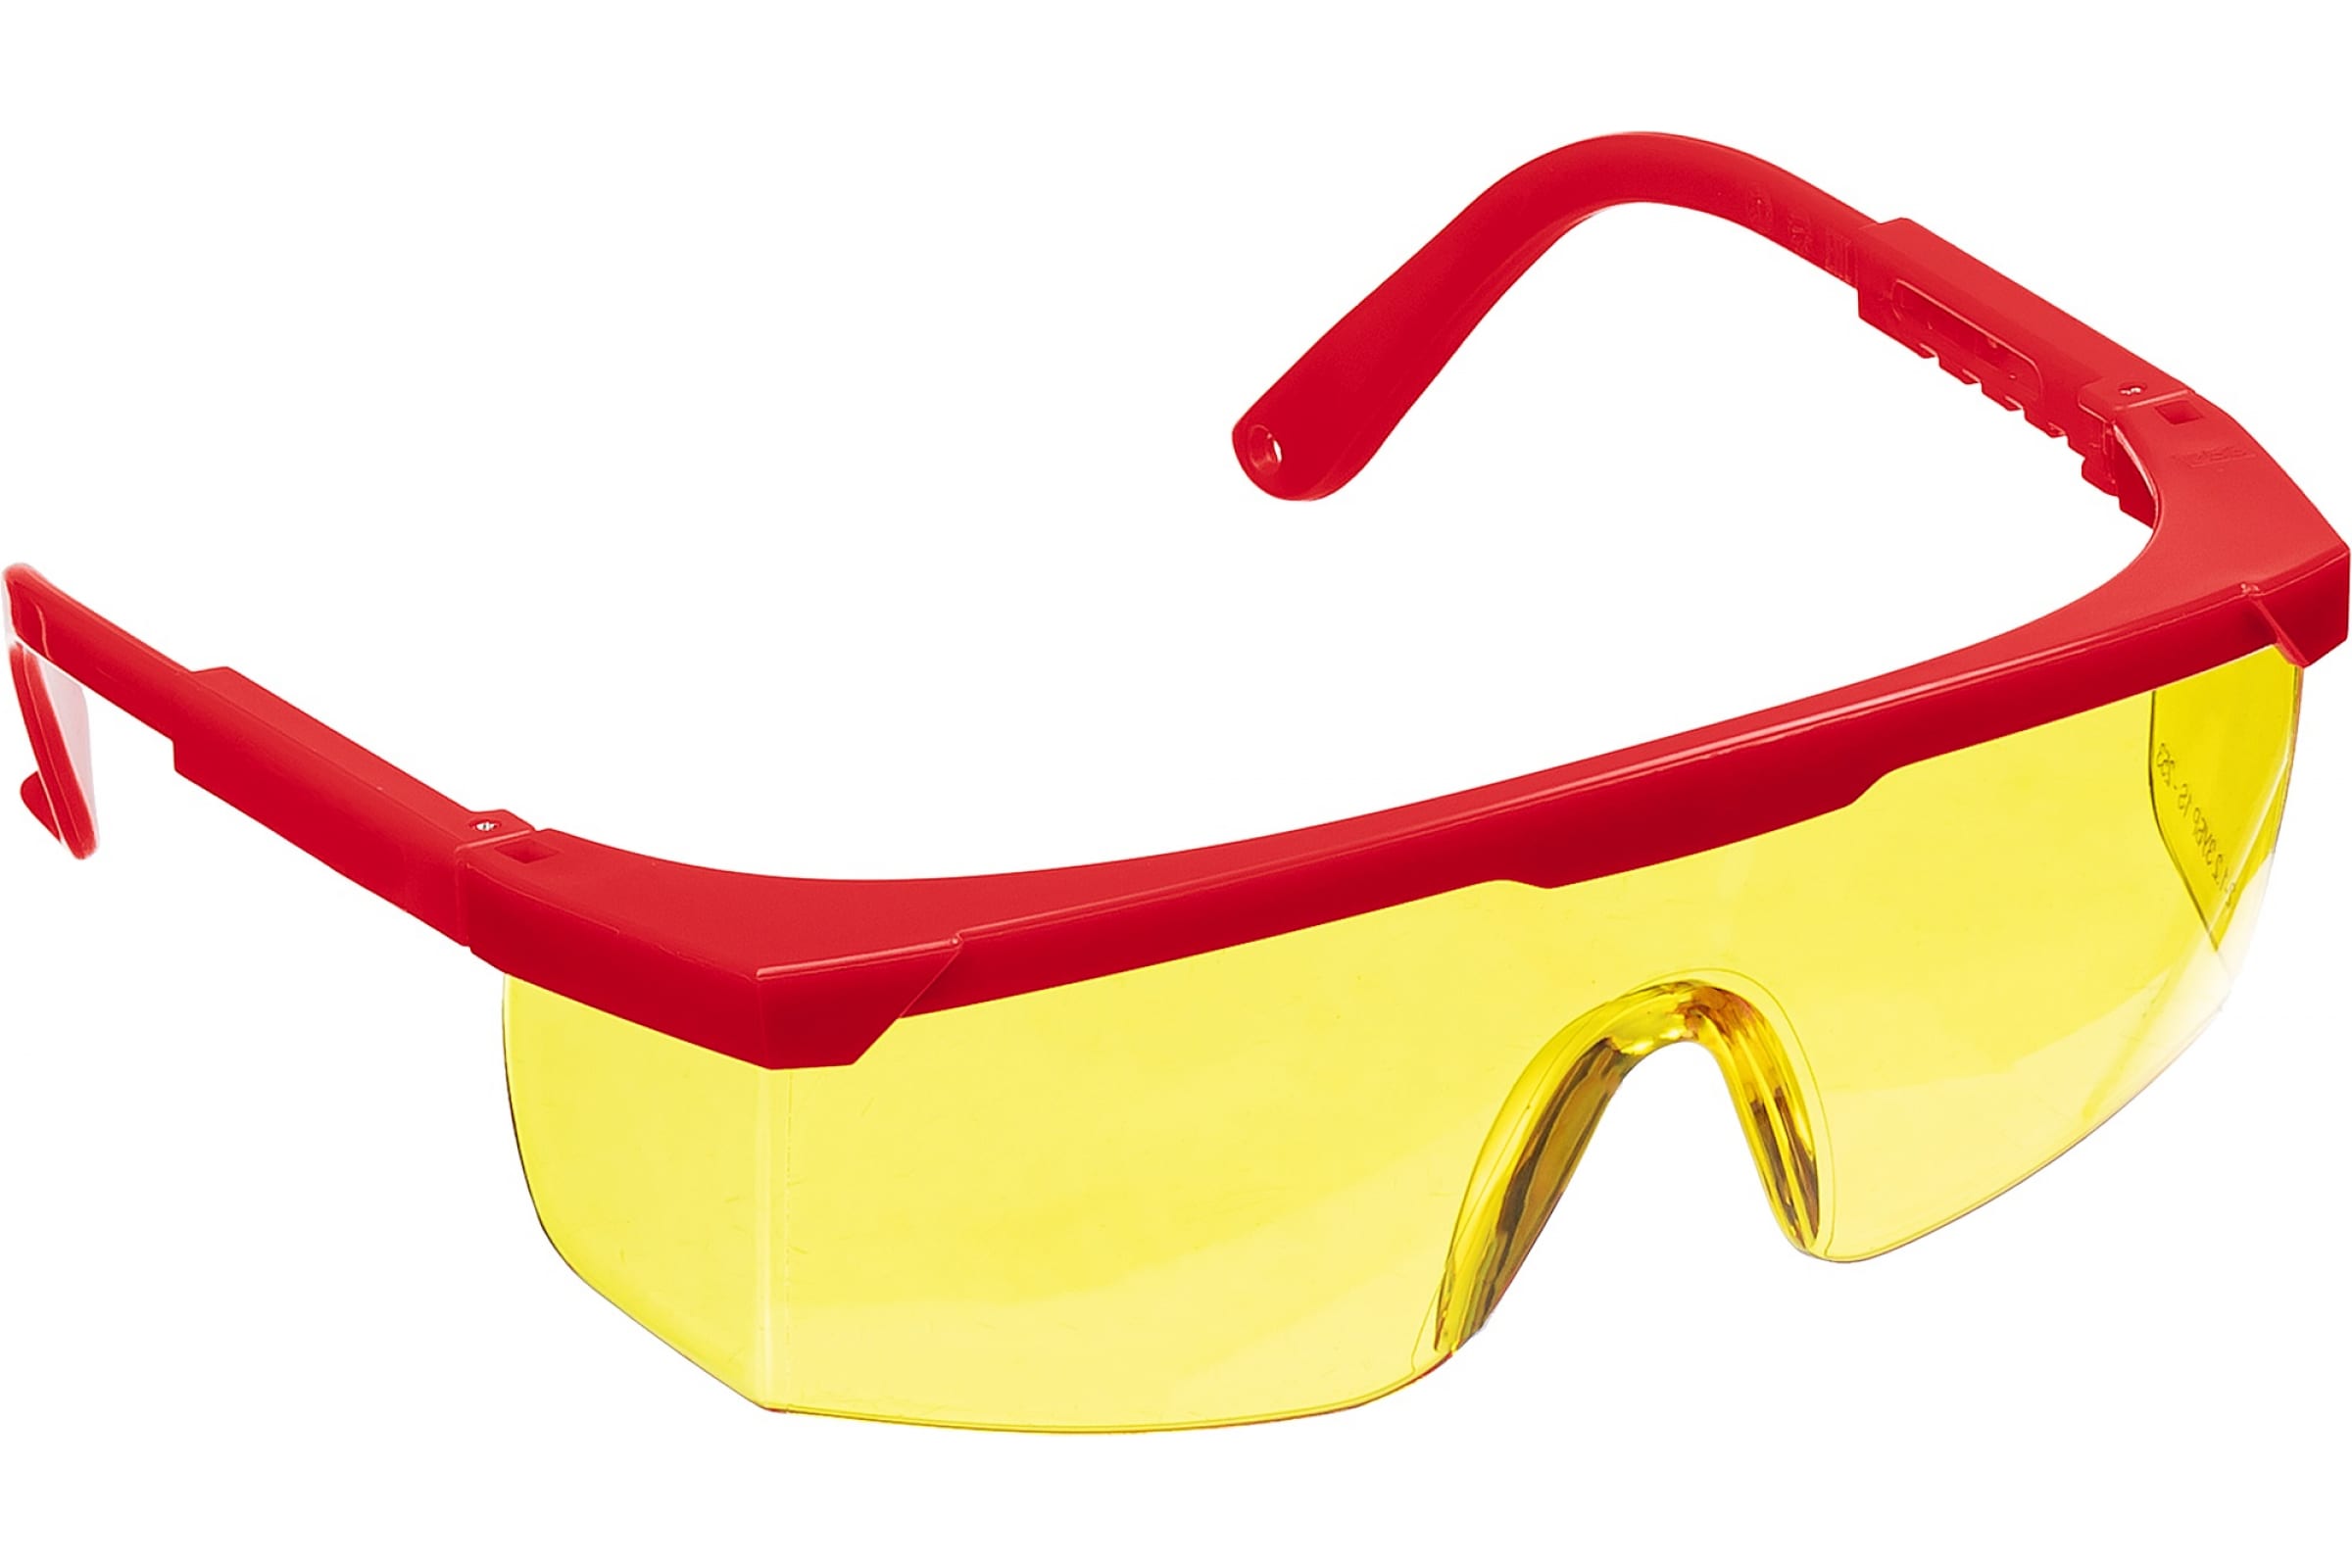 Защитные очки зубр. Очки защитные желтые открытого типа ЗУБР спектр 3 110316. Защитные очки Stayer 2-110457. Очки защитные ЗУБР спектр. Очки защитные Stayer Master монолинза с боковой защитой, открытого типа.